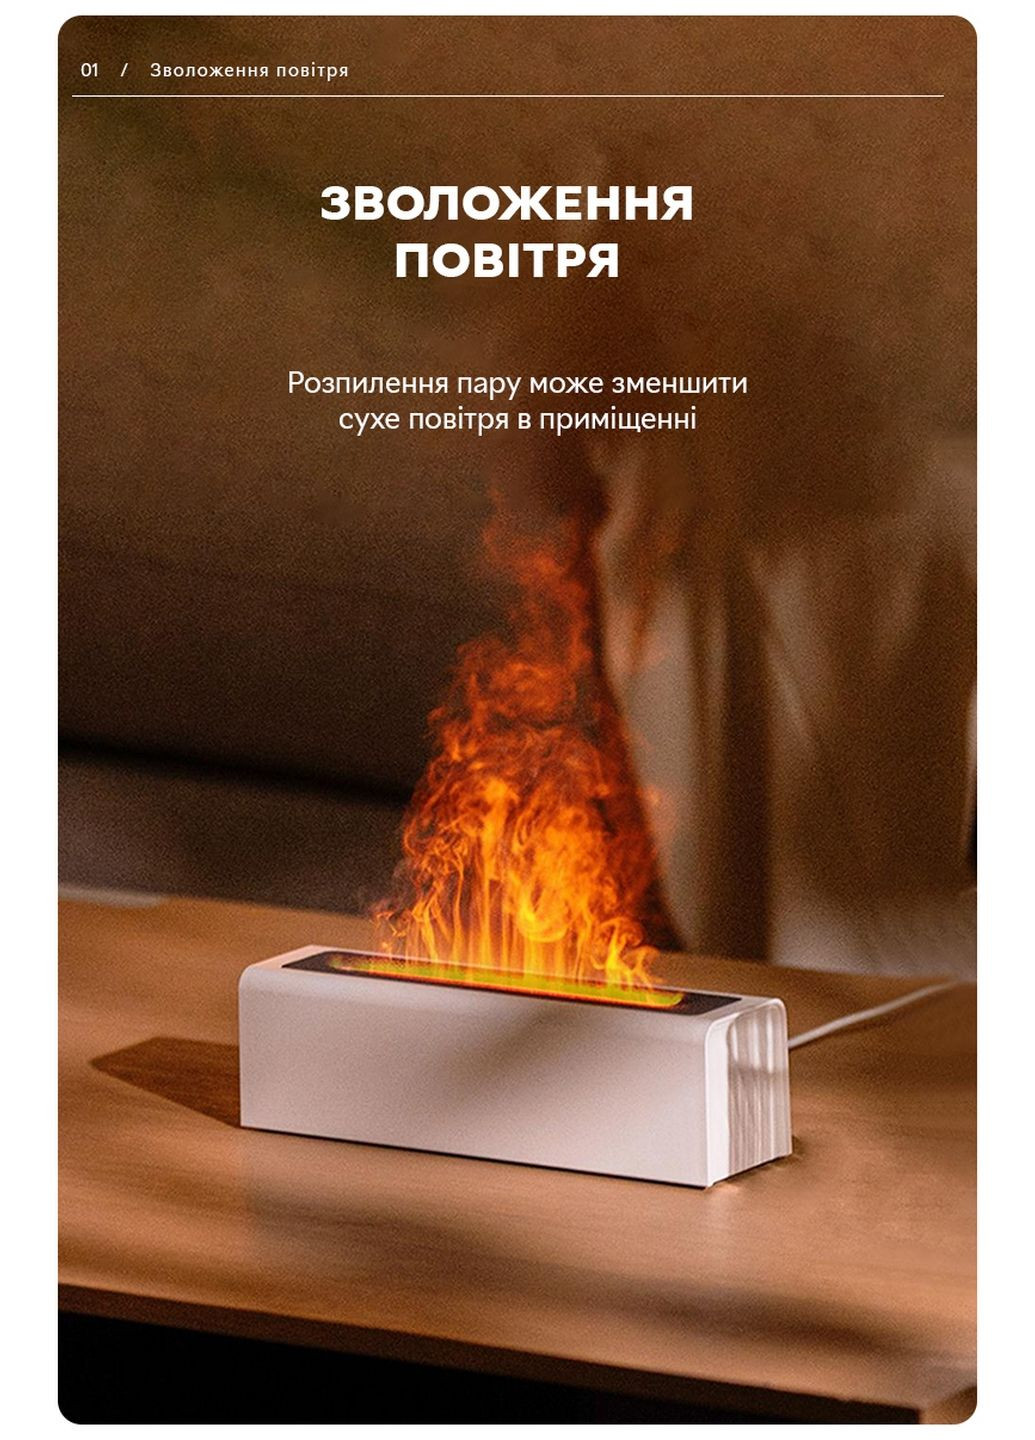 Зволожувач повітря портативний DQ-711 Nordic Style Flame V3 аромадифузор електричний, ефект полум'я, ПОДАРУНОК + 2 Арома олії Kinscoter (293419466)